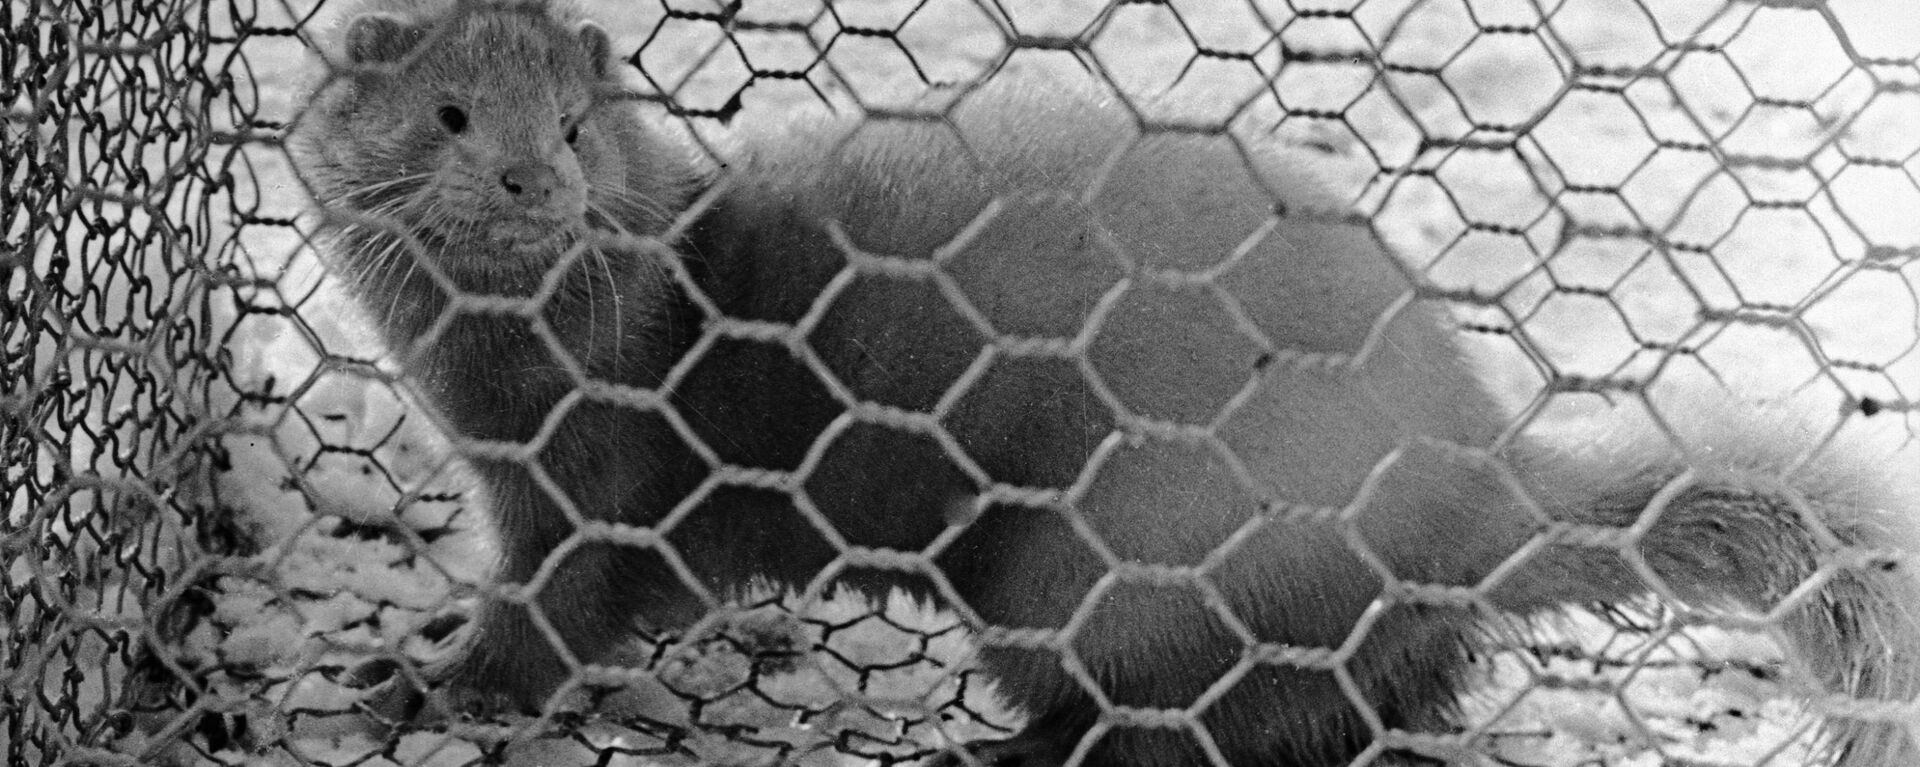 Норка в клетке звероводческого хозяйства, архивное фото - Sputnik Латвия, 1920, 27.11.2020